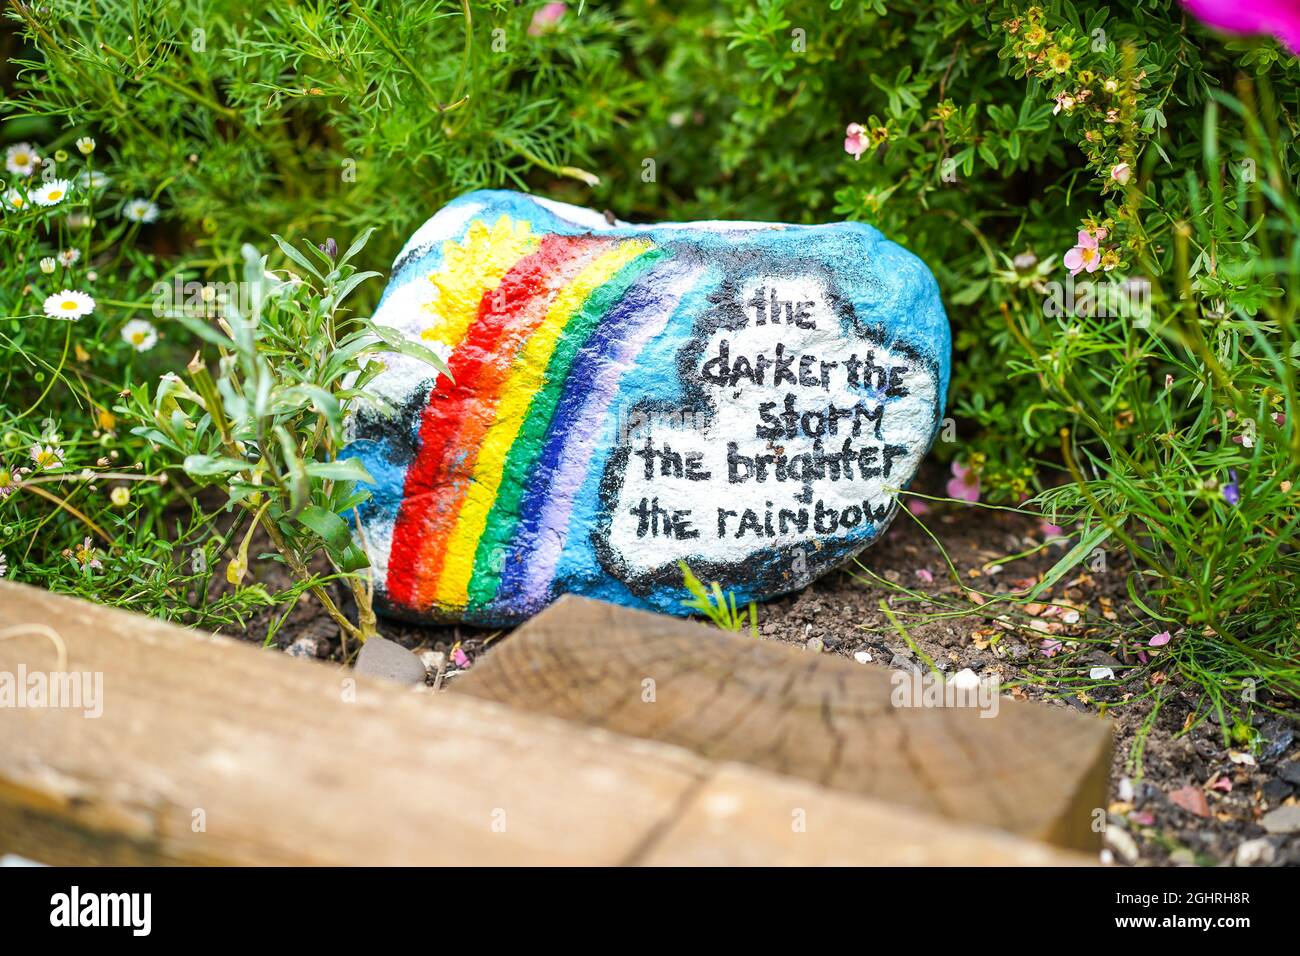 „je dunkler der Sturm, desto größer der Regenbogen“ – Schild auf einem Gartenstein, auf dem Passanten lesen und sich positiv denken, denken und verhalten können. Stockfoto